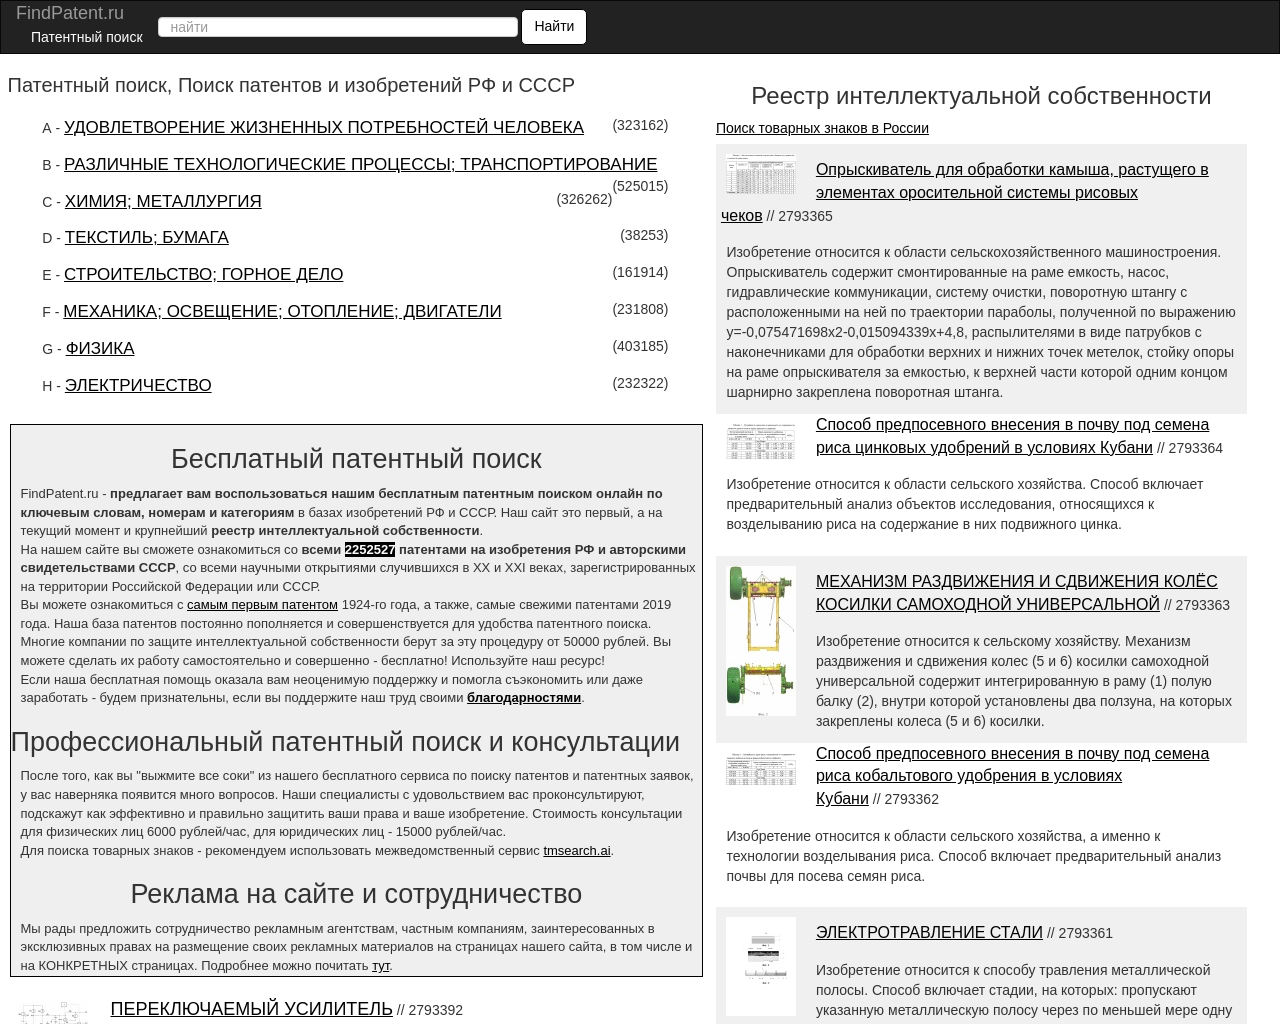 findpatent.ru